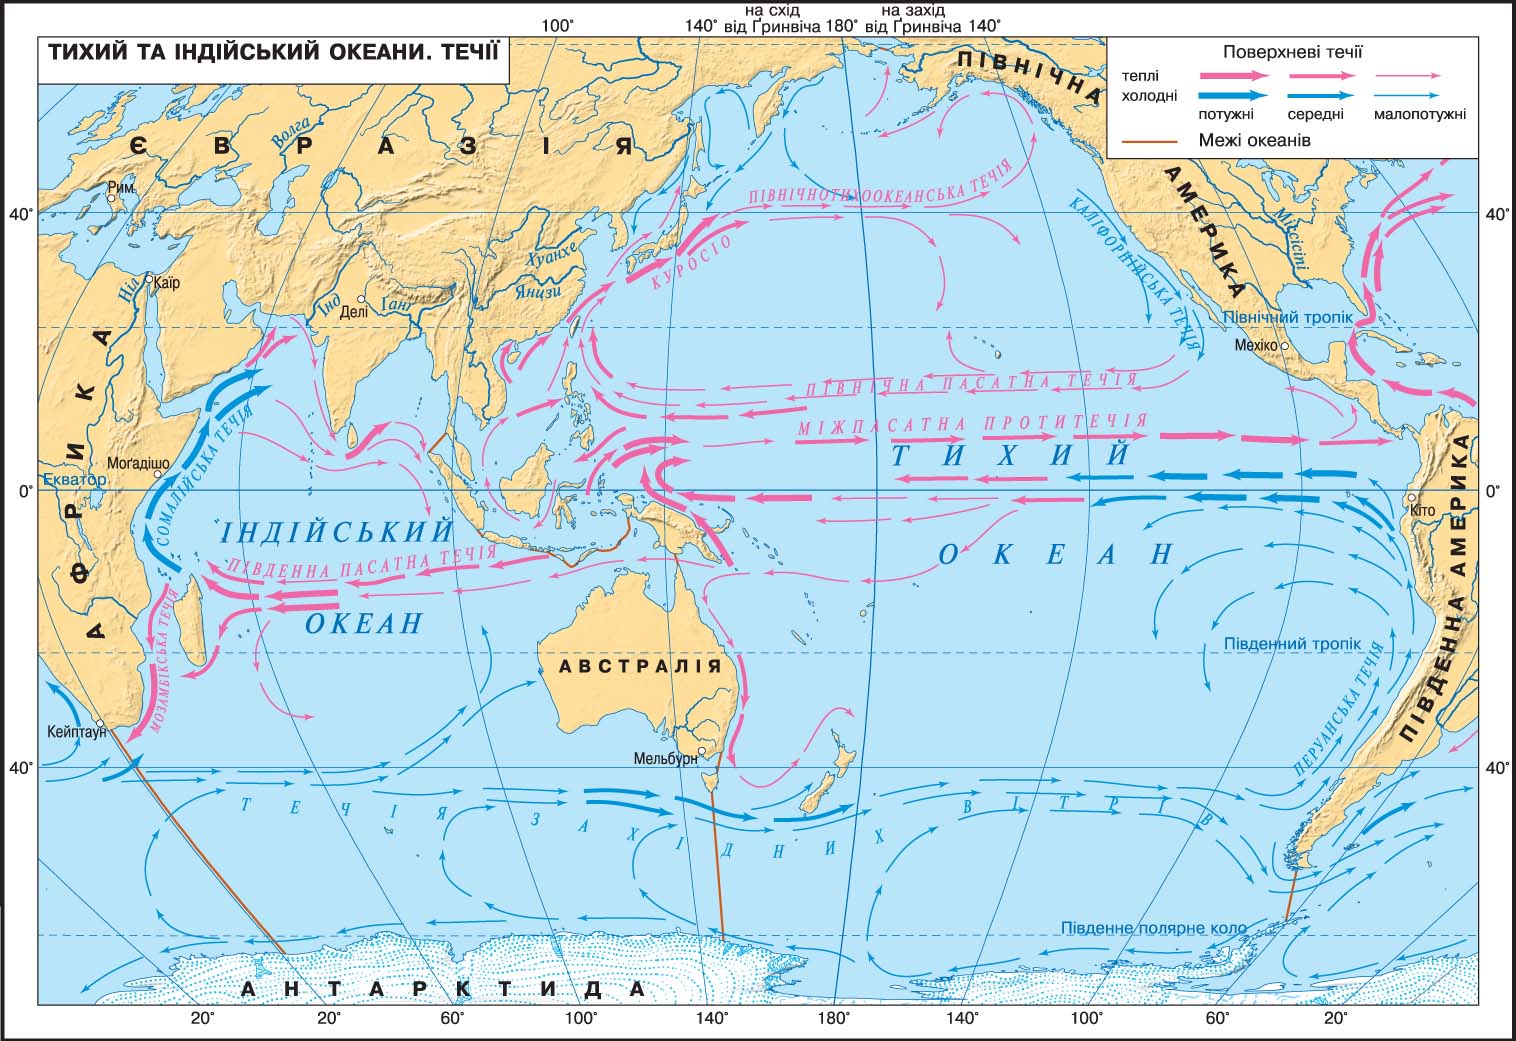 5 течения тихого океана. Карта течений Тихого океана. Тихий океан карта 7 класс атлас холодные и теплые течения. Течения Тихого океана 7 класс. Течения Тихого океана теплые и холодные на карте 7.